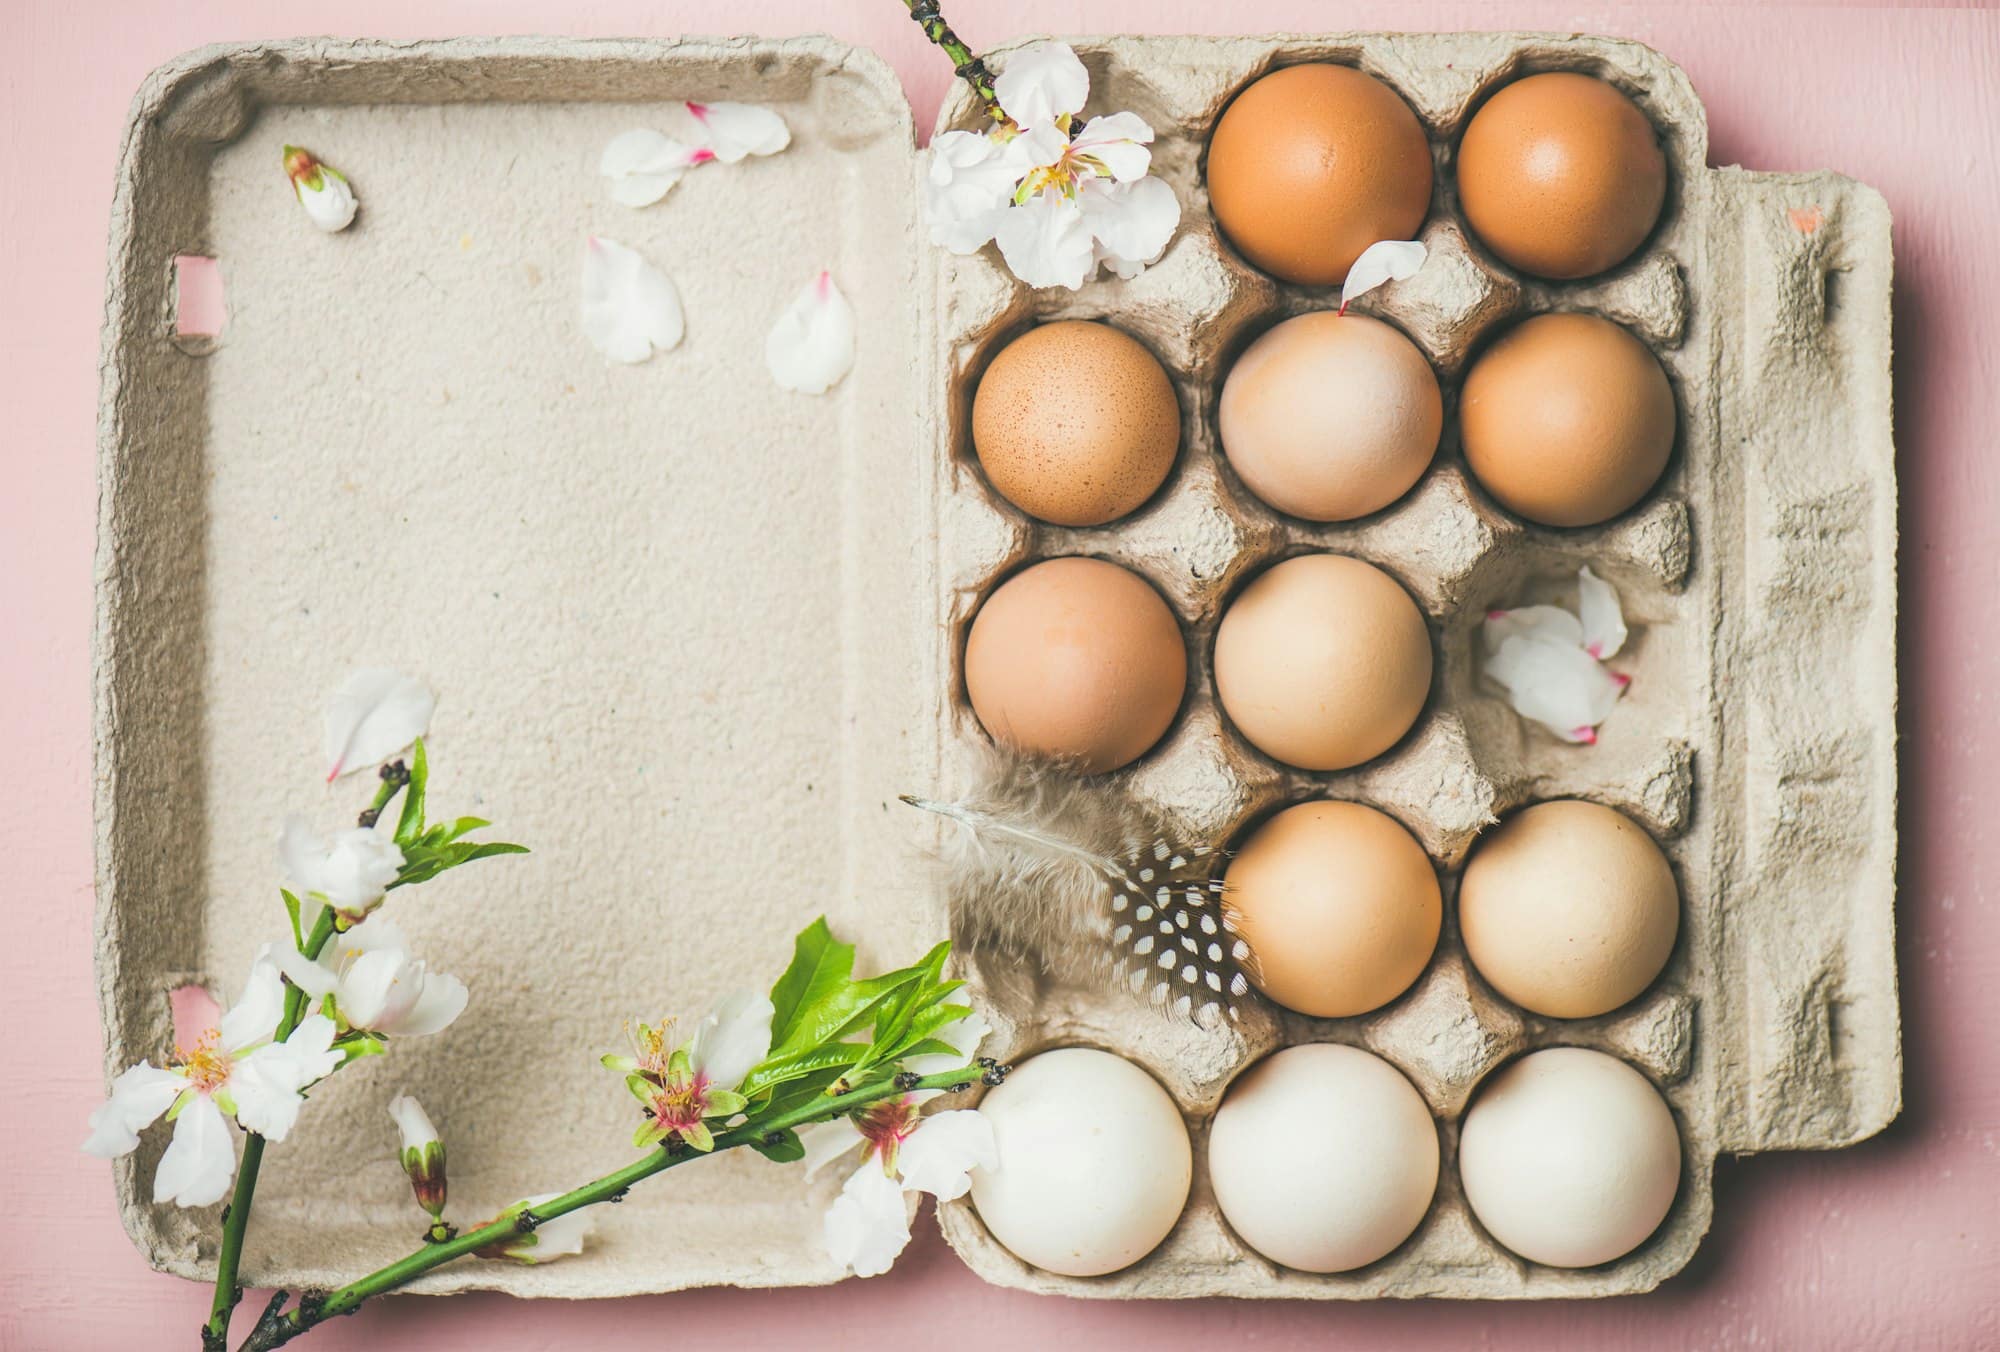 Αυγά: Είναι όντως κακό να τρώμε πολλά